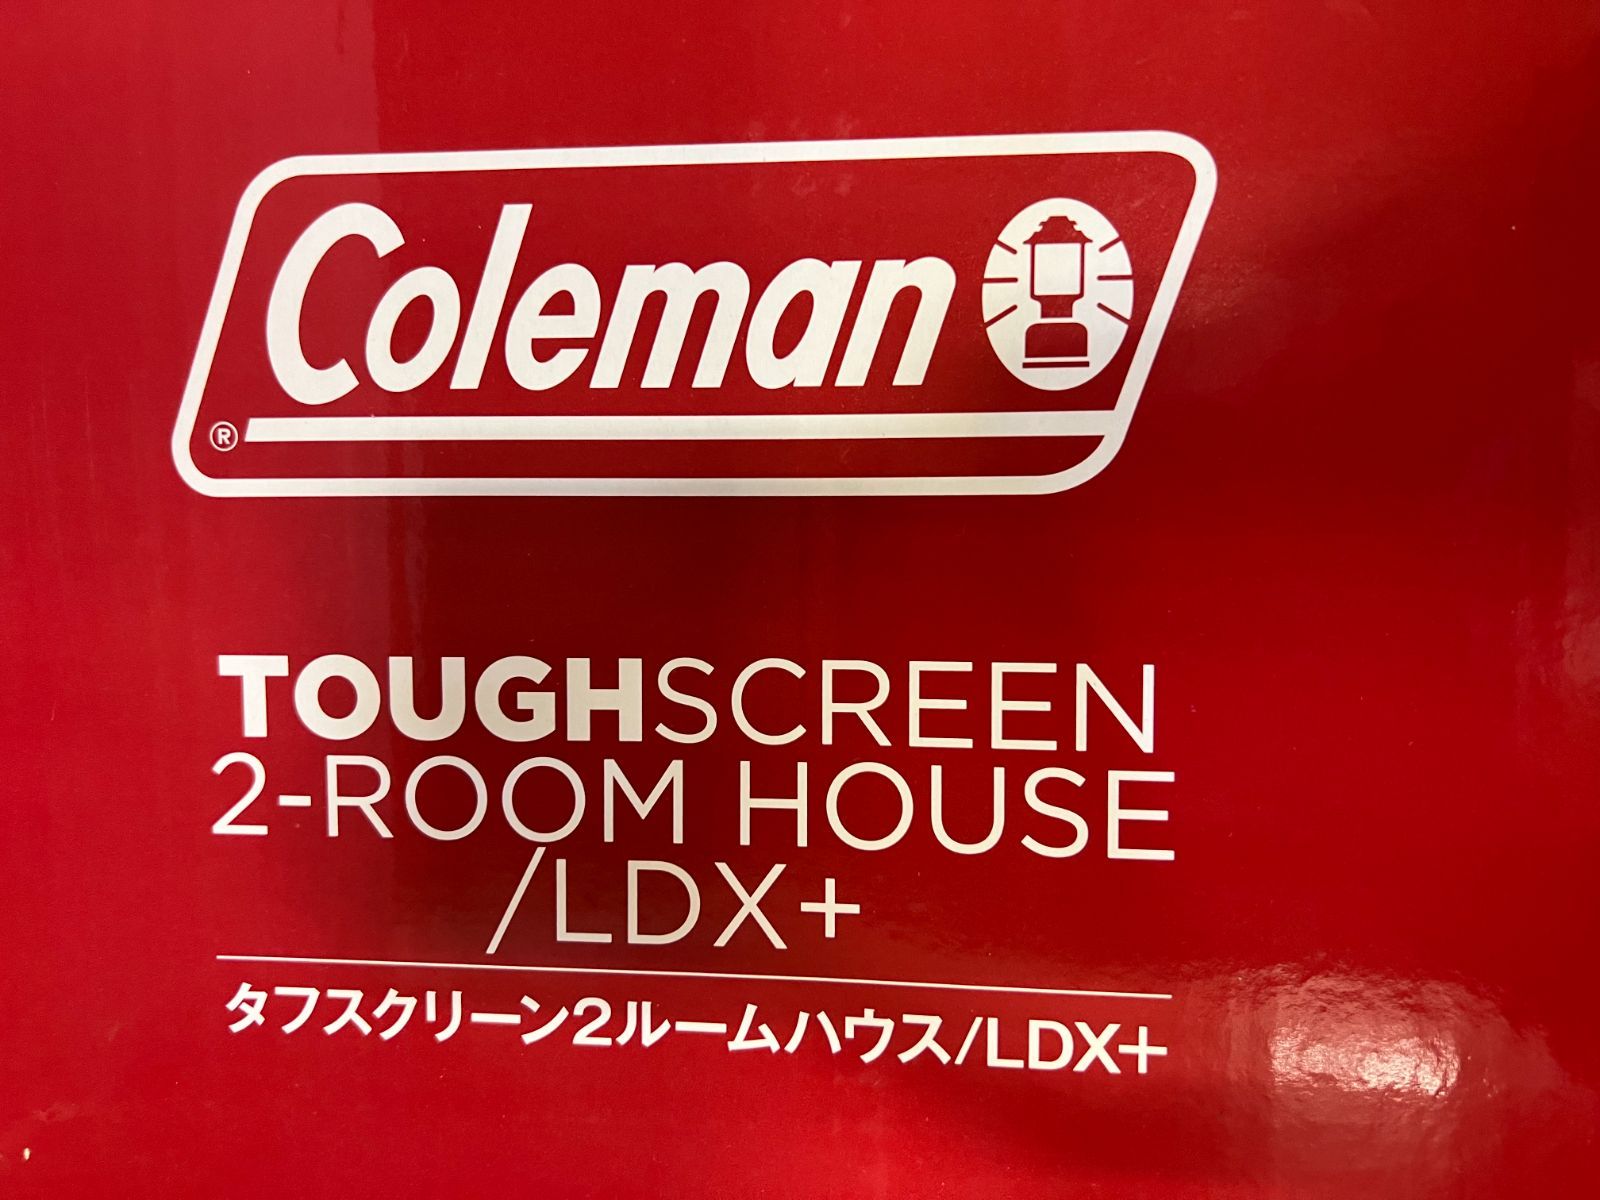 コールマン タフスクリーン２ルームハウス/LDX+ - メルカリ